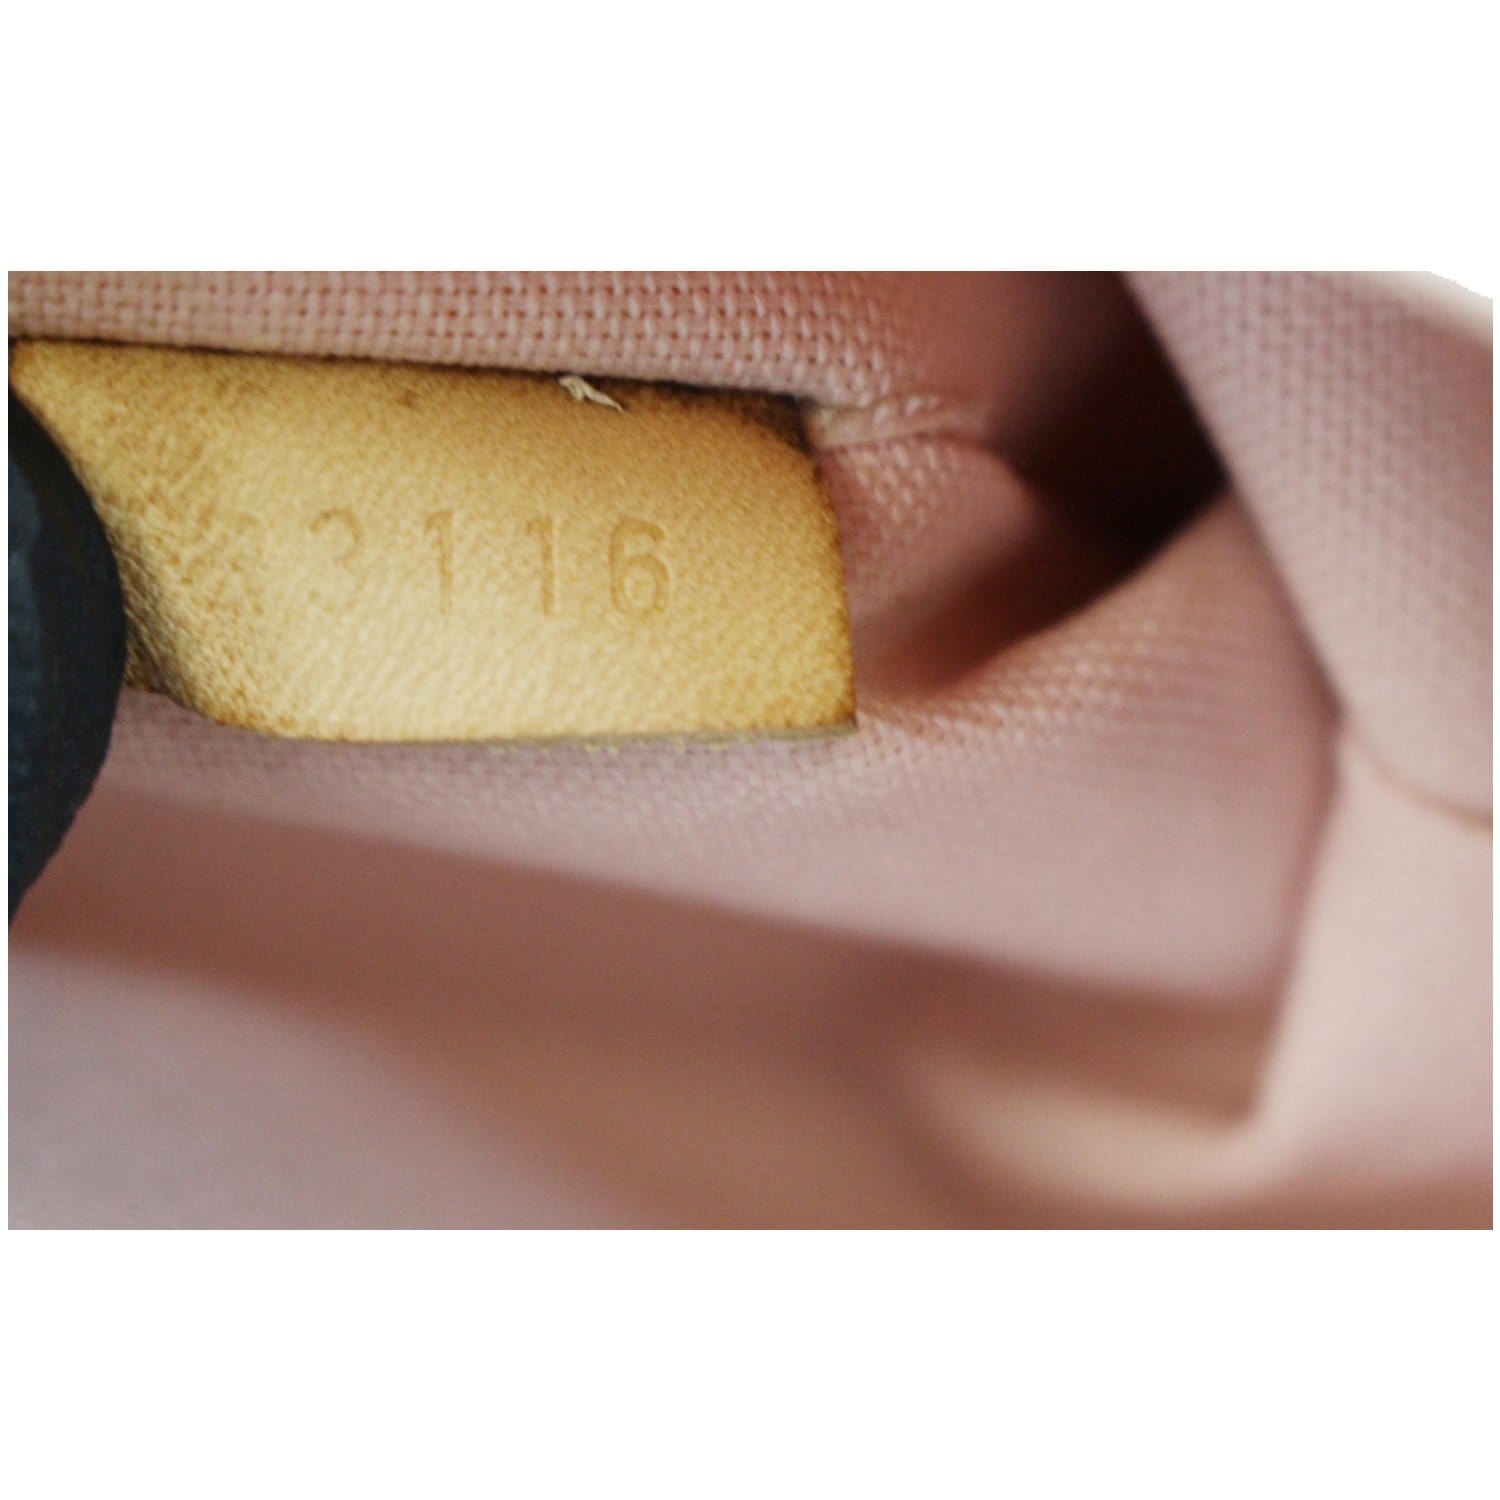 Louis Vuitton Croisette Damier azur Shoulder bag 2way 25*16*9cm